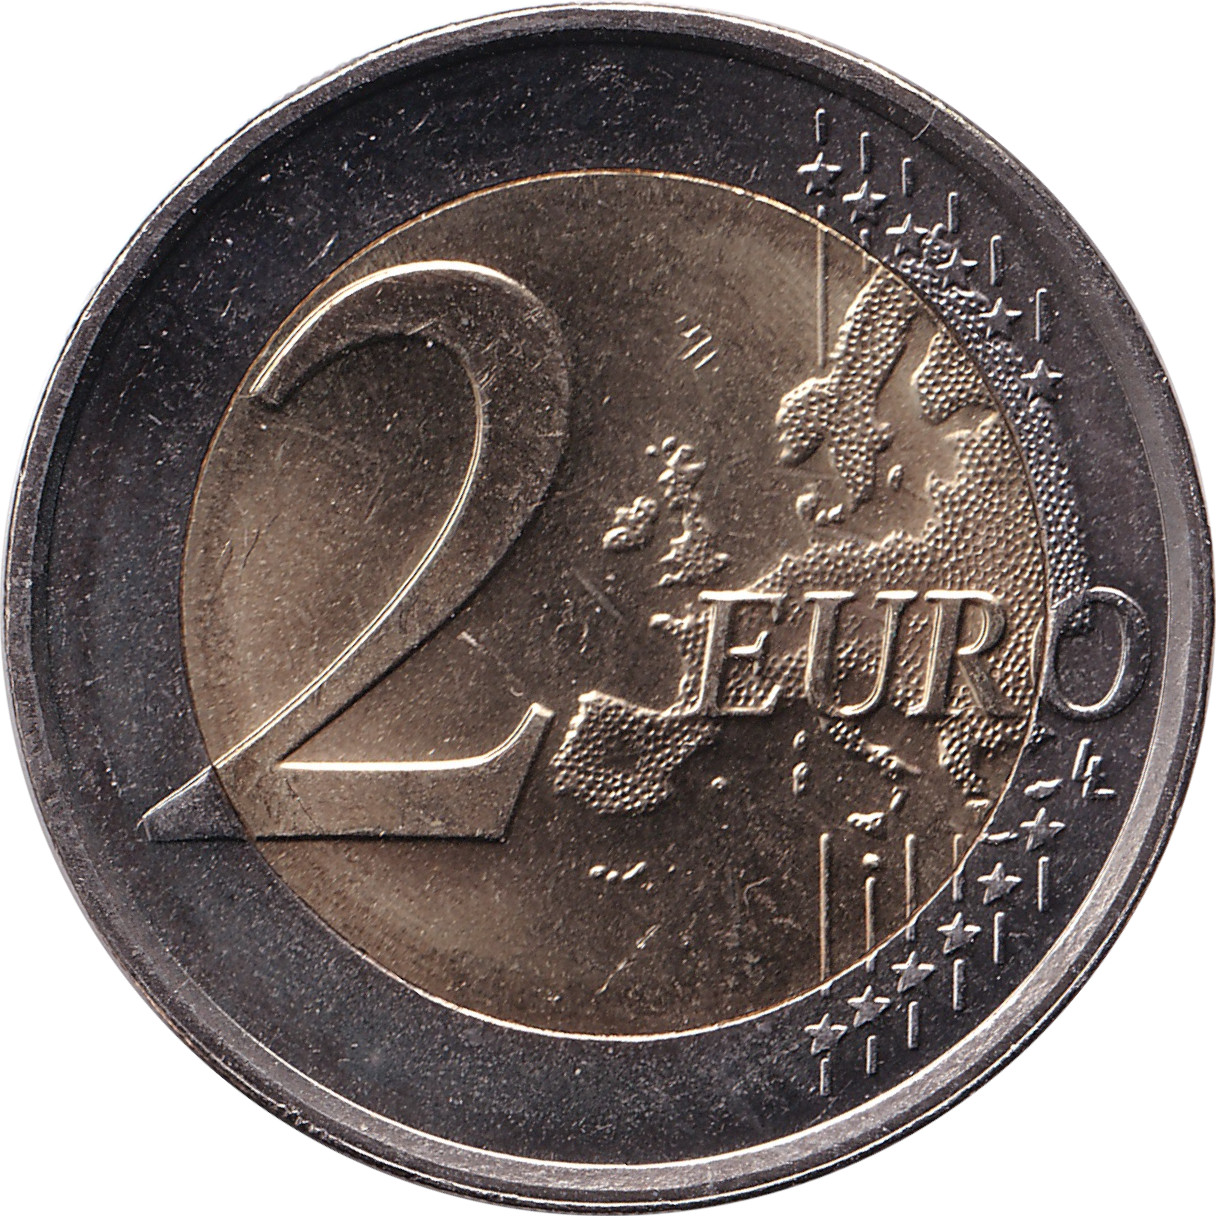 2 euro - Double portrait